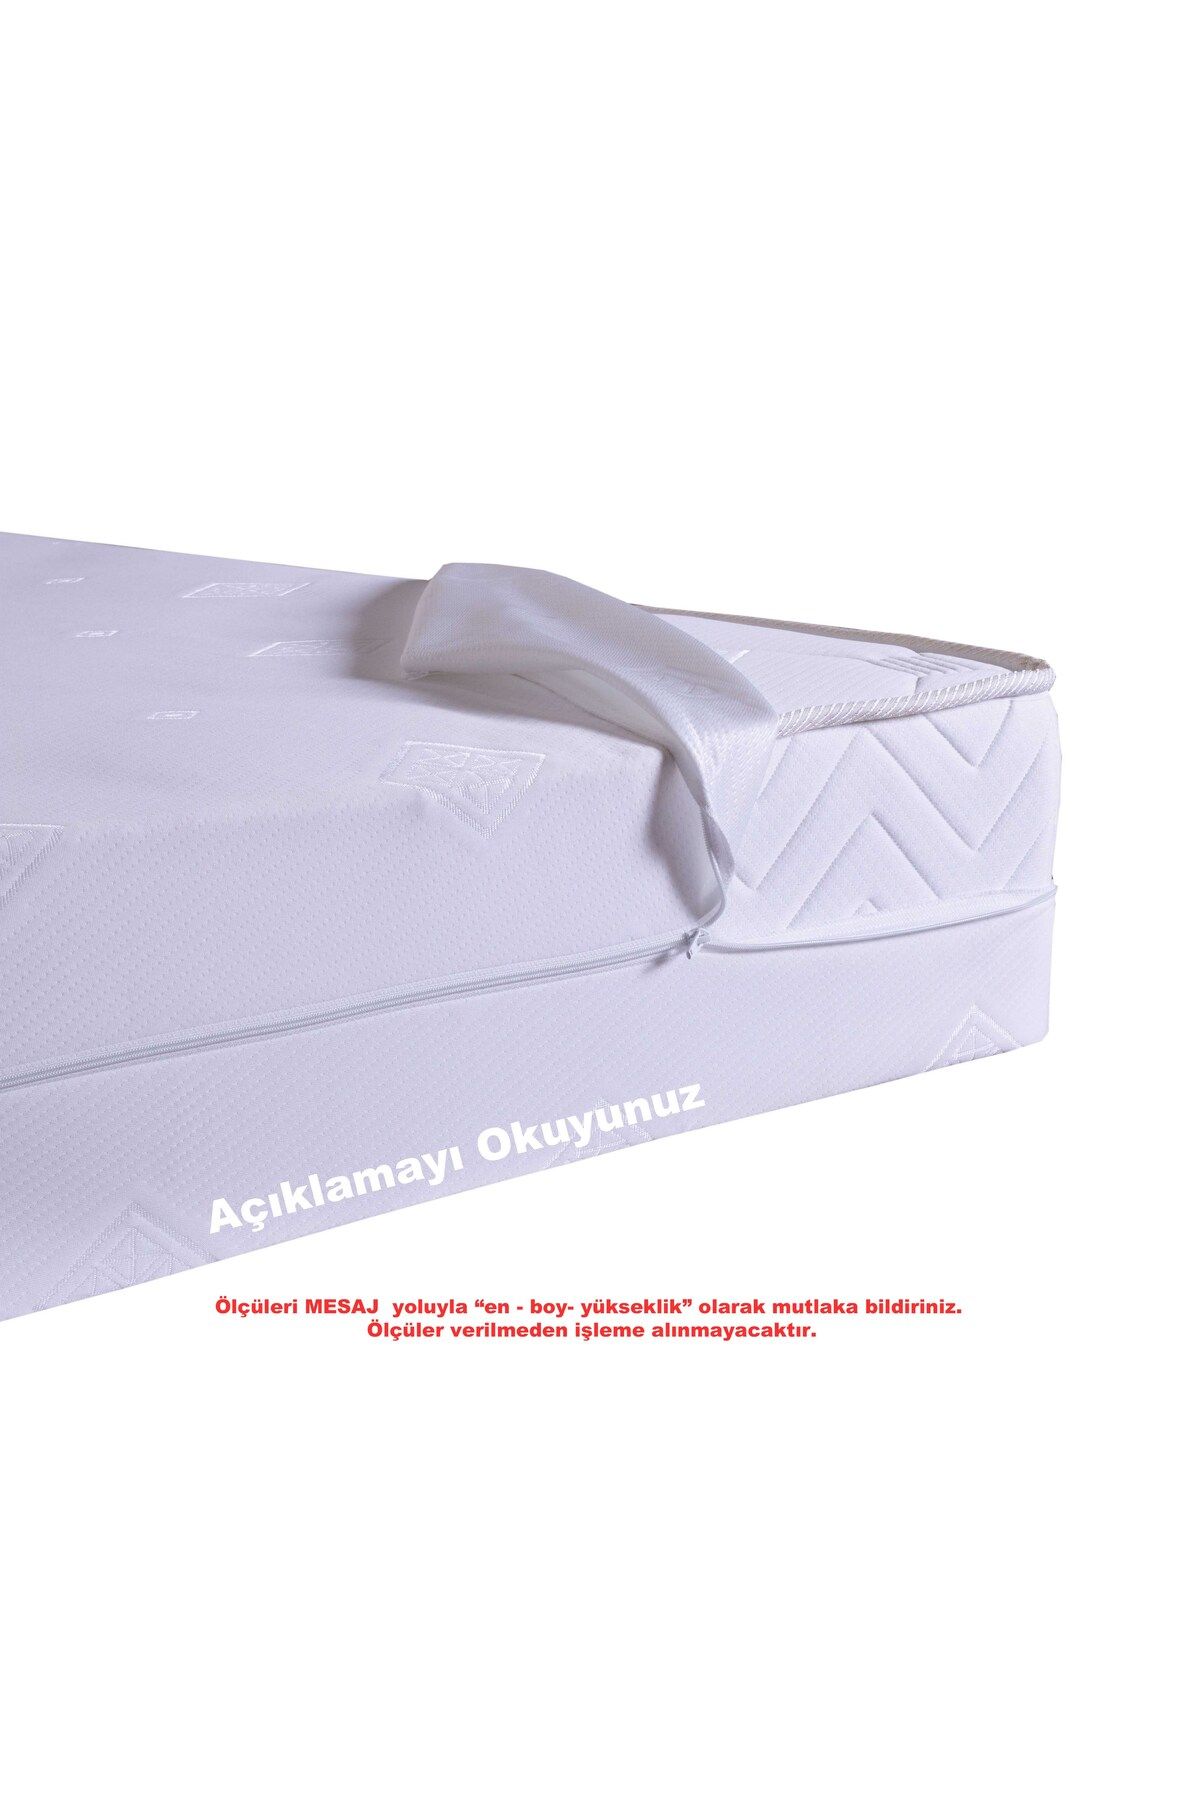 Artex Kılıf 160x200 Yatak Kılıfı Koruyucusu Fermuarlı Kılıf Yatağa Özel Üretim